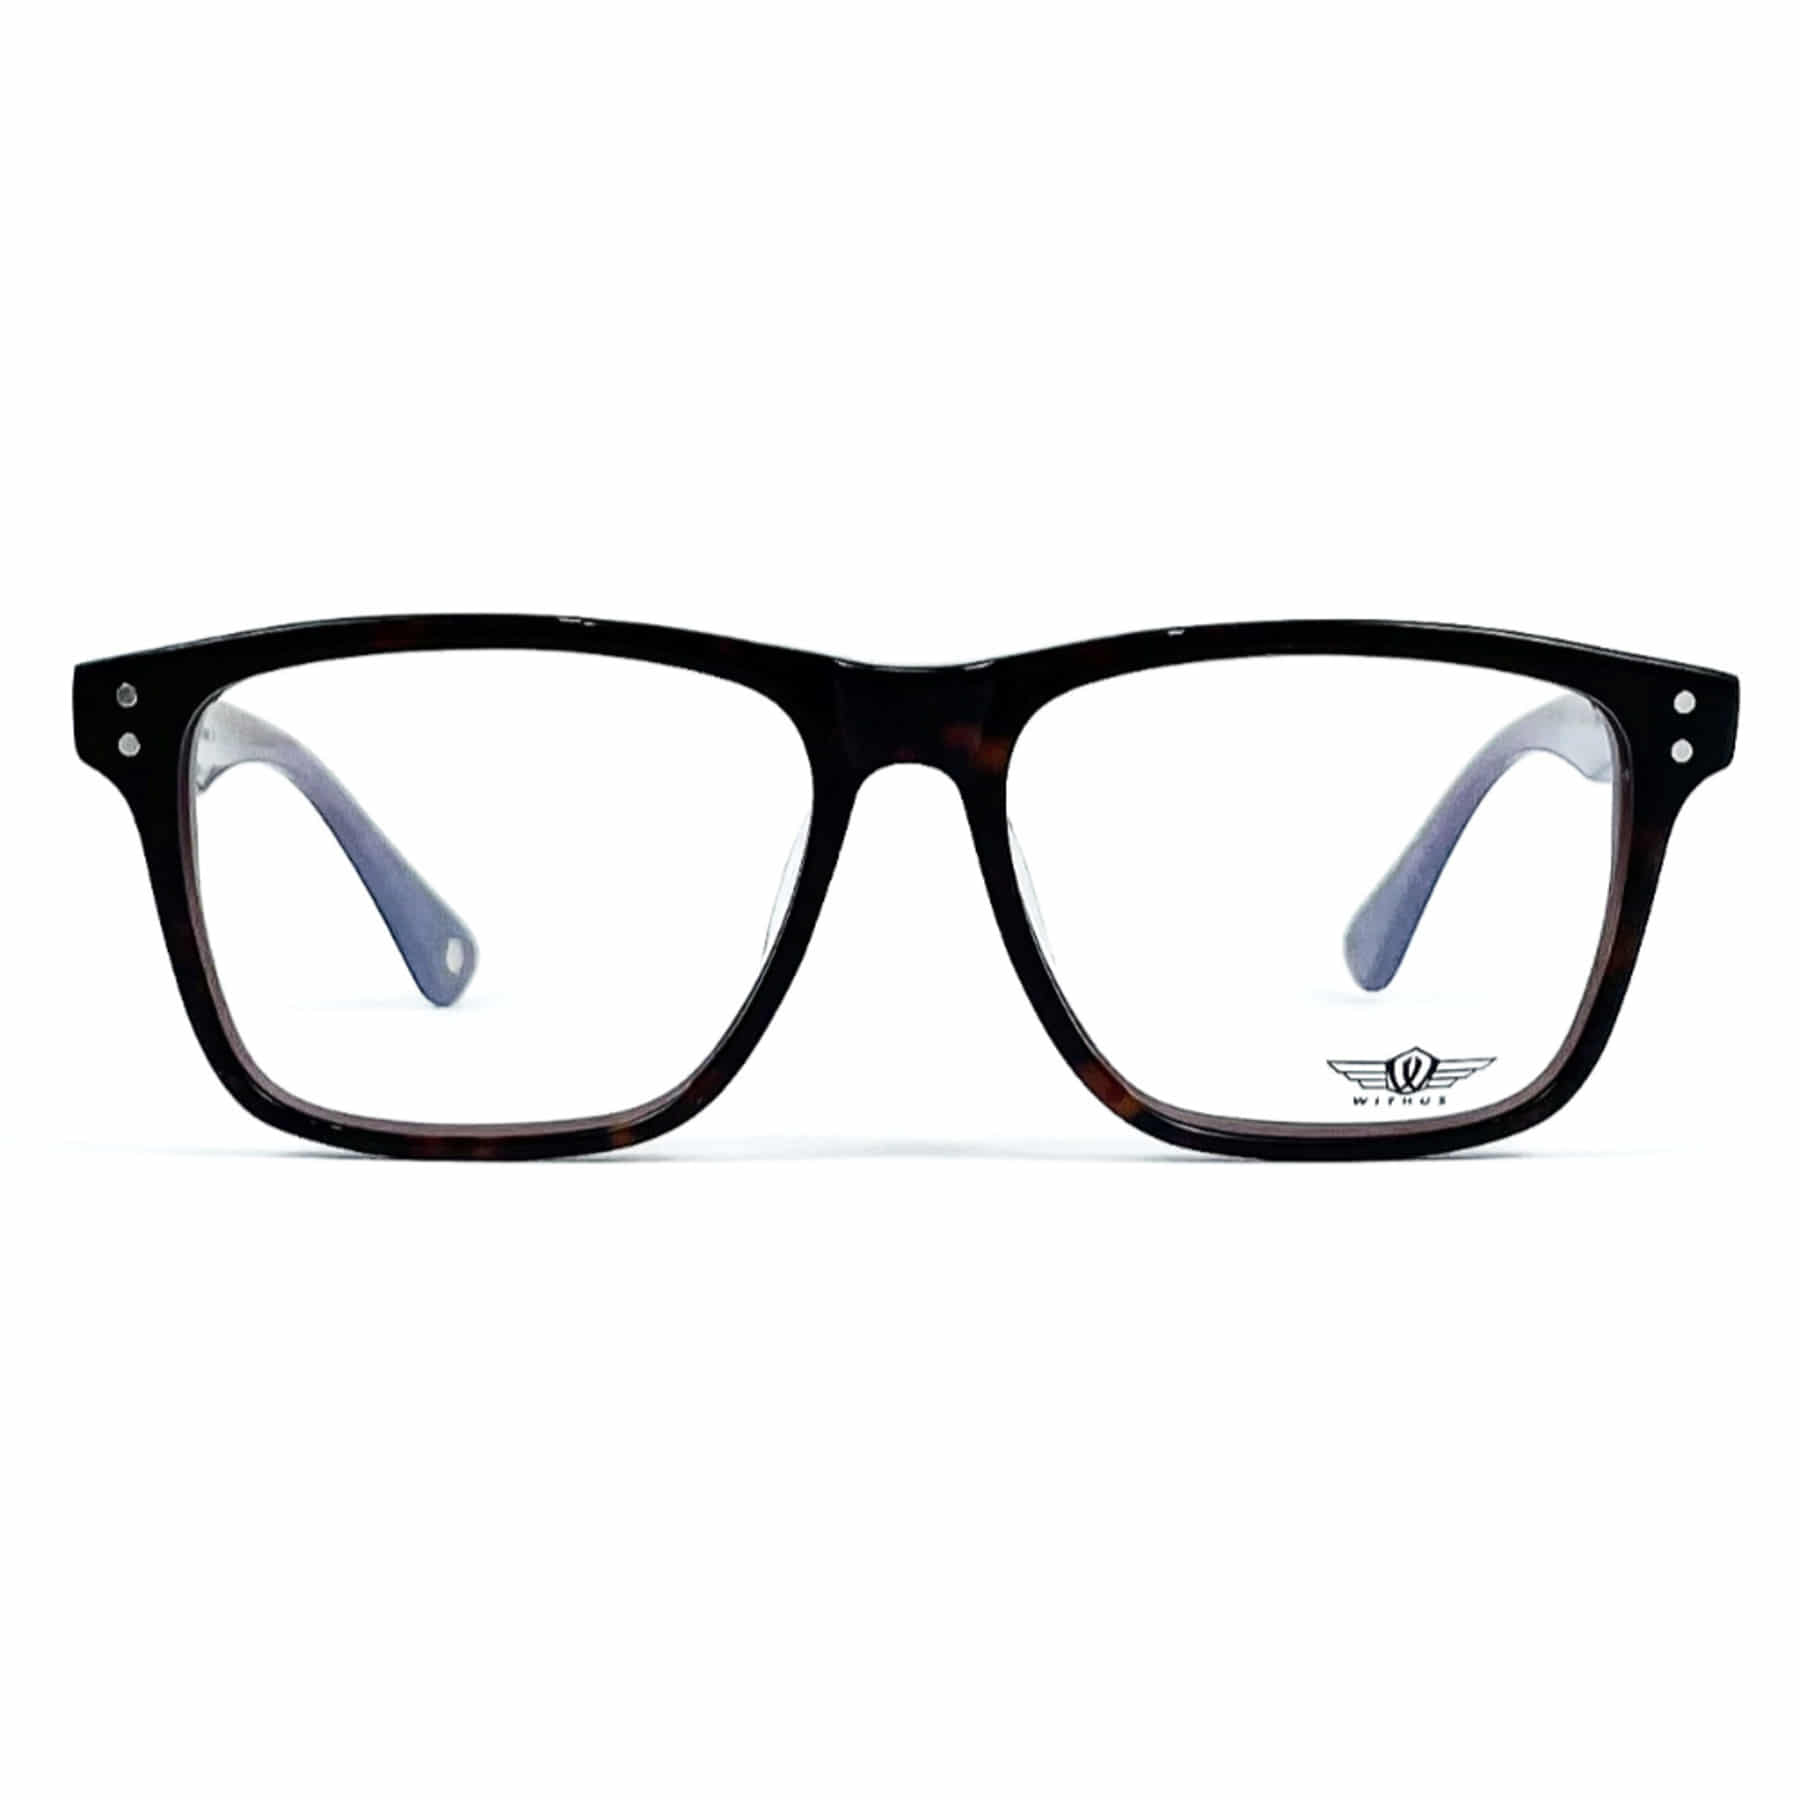 WITHUS-8121, Korean glasses, sunglasses, eyeglasses, glasses